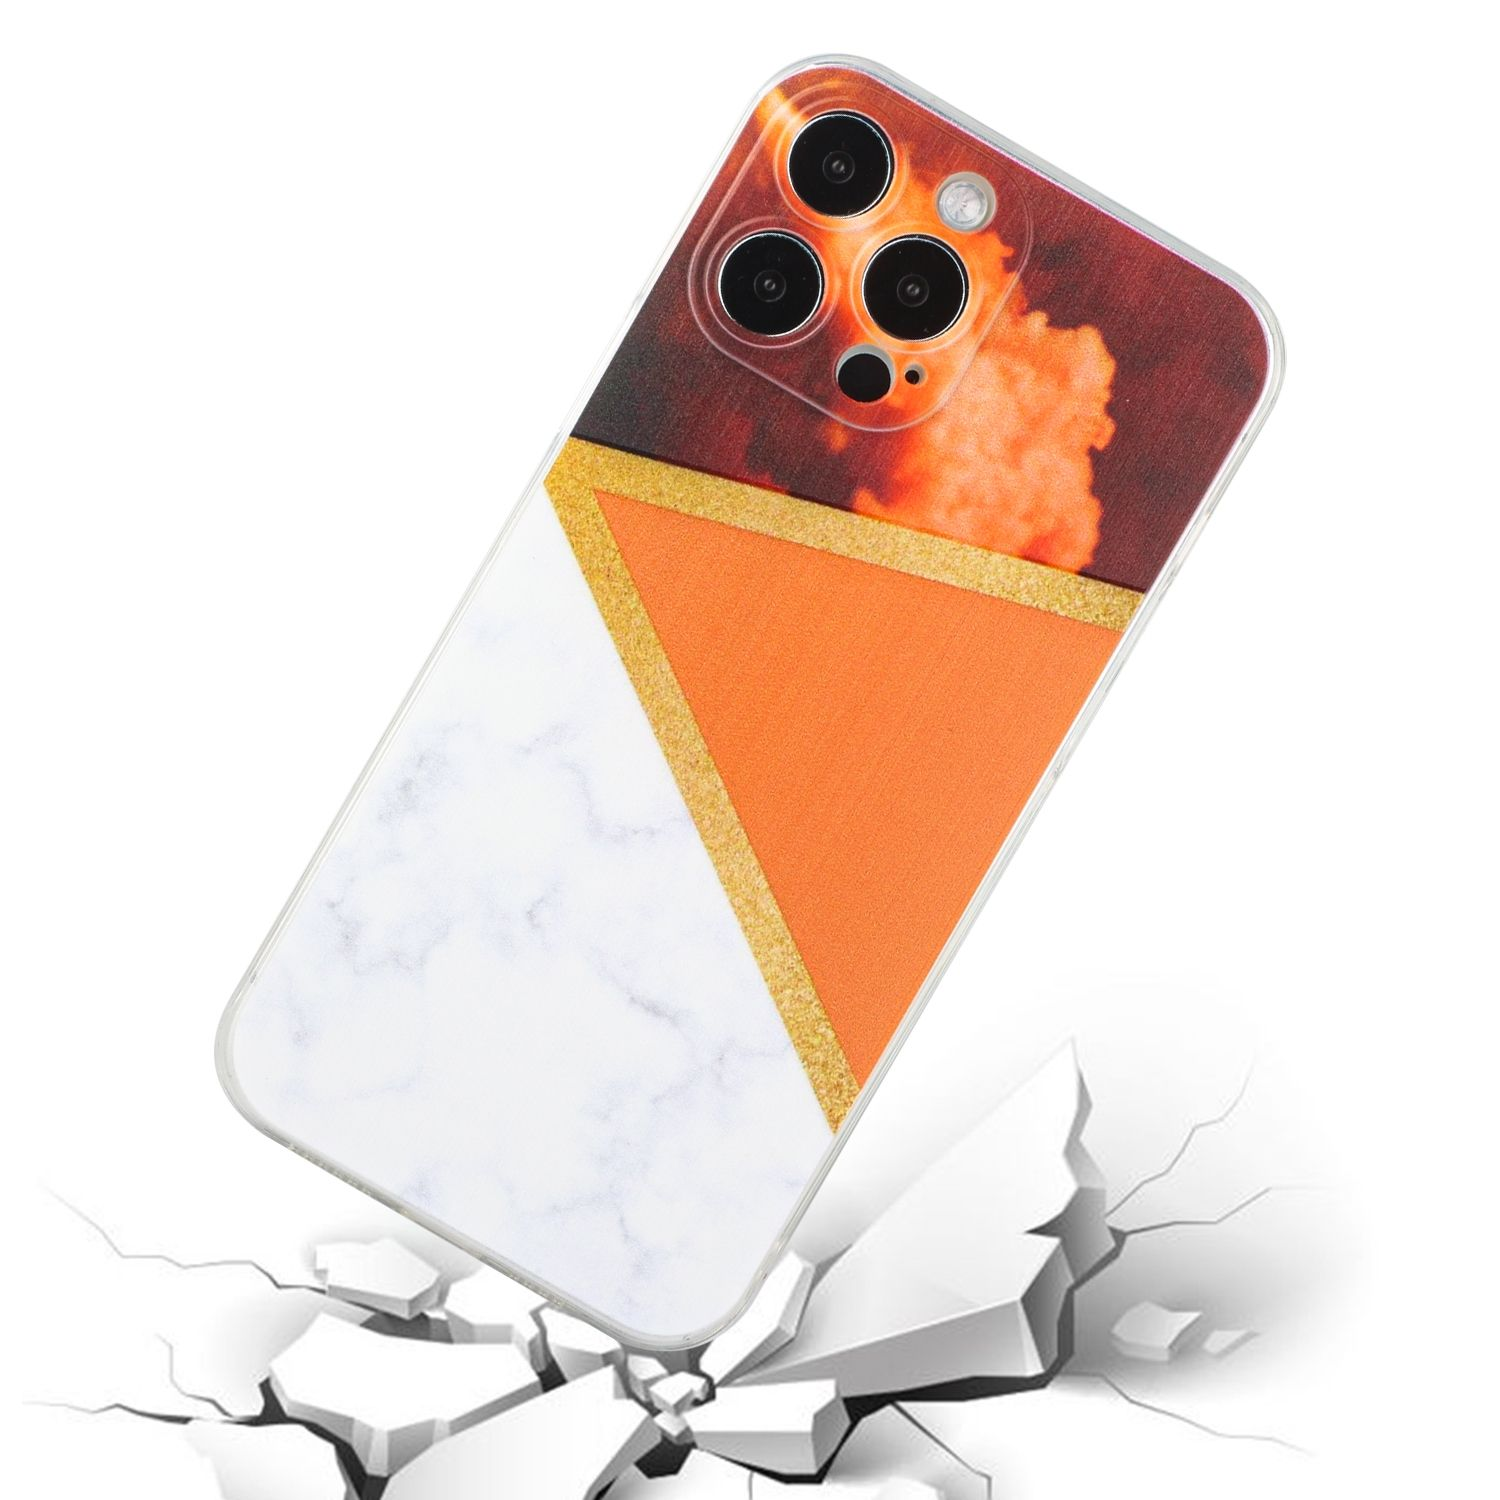 KÖNIG DESIGN Case, Backcover, Apple, Orange 12 iPhone Pro